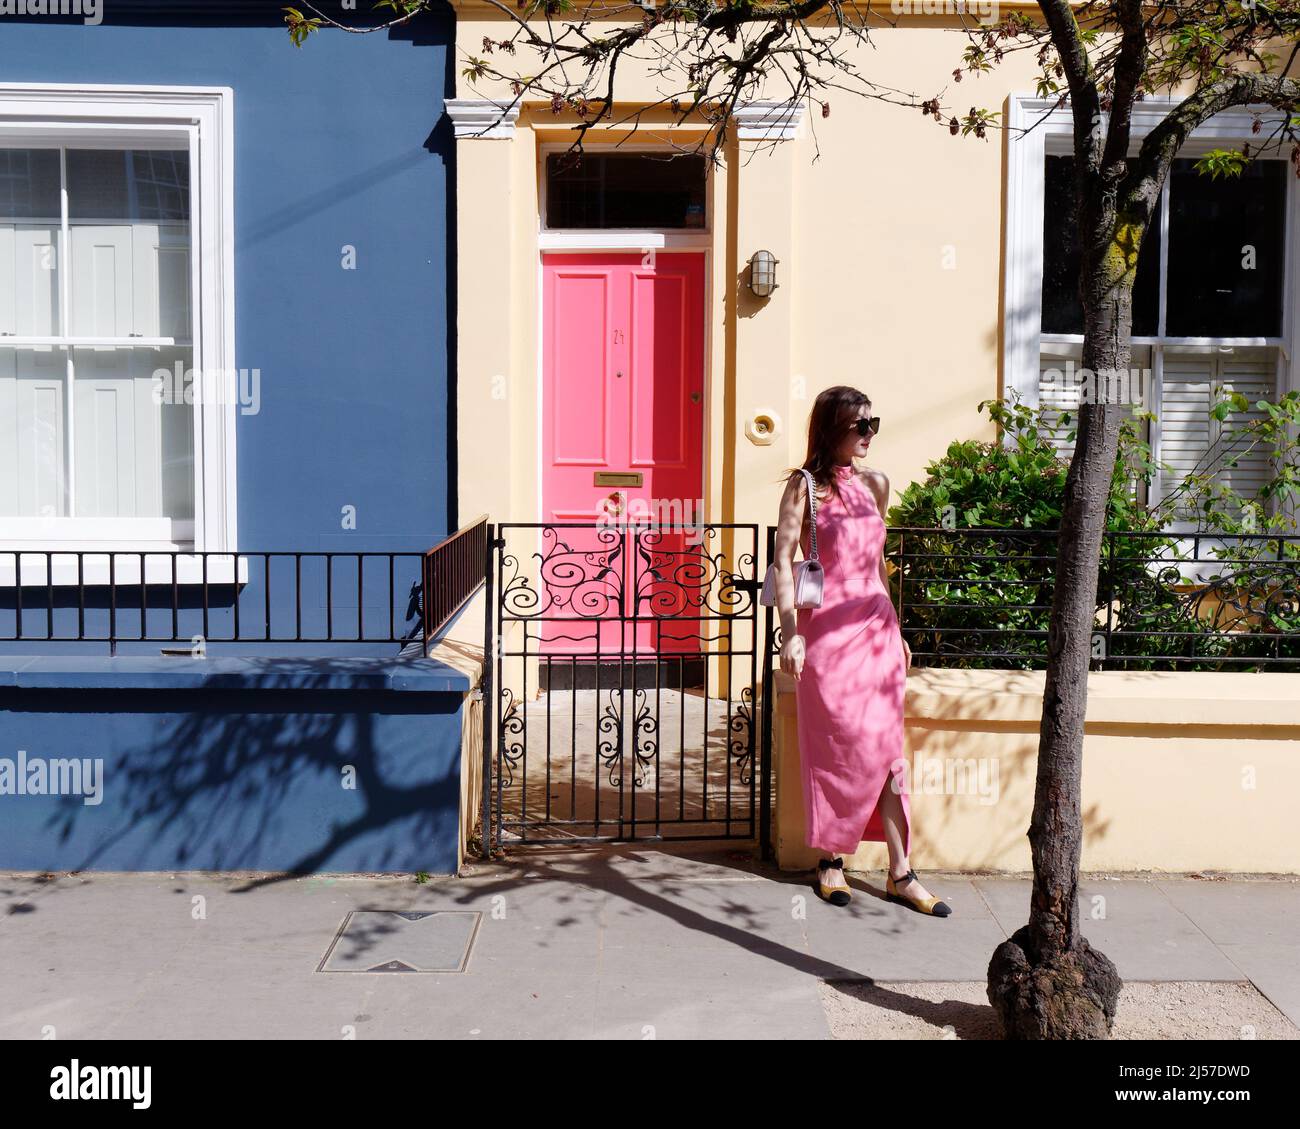 Londres, Grand Londres, Angleterre, avril 09 2022 : une femme en robe rose se tient devant une maison avec une porte rose sur Portabello Road à Notting Hill. Banque D'Images